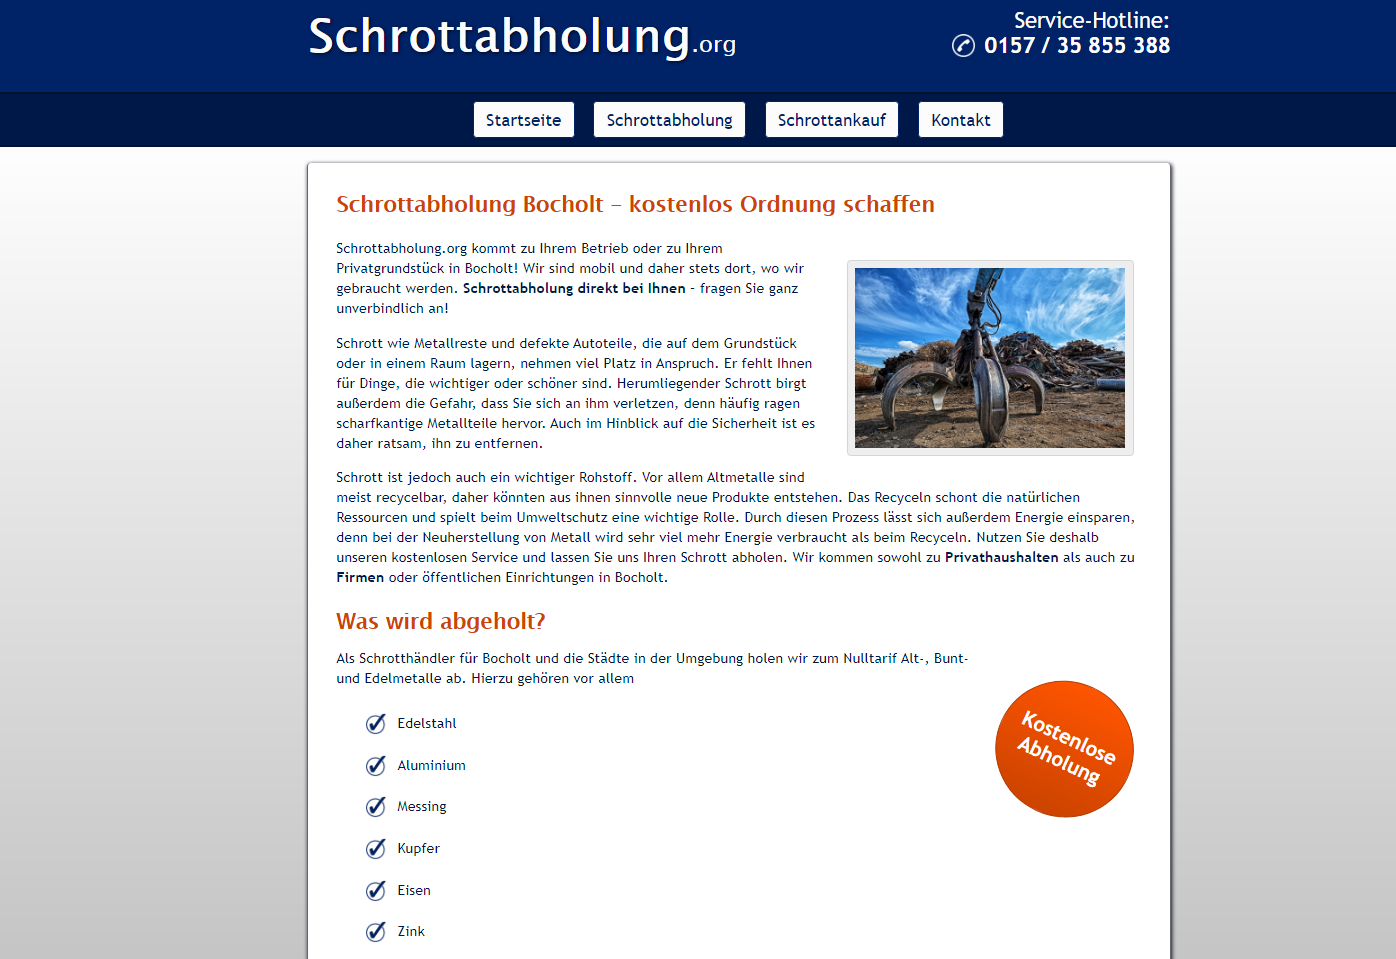 Mobile Schrotthändler in Bocholt